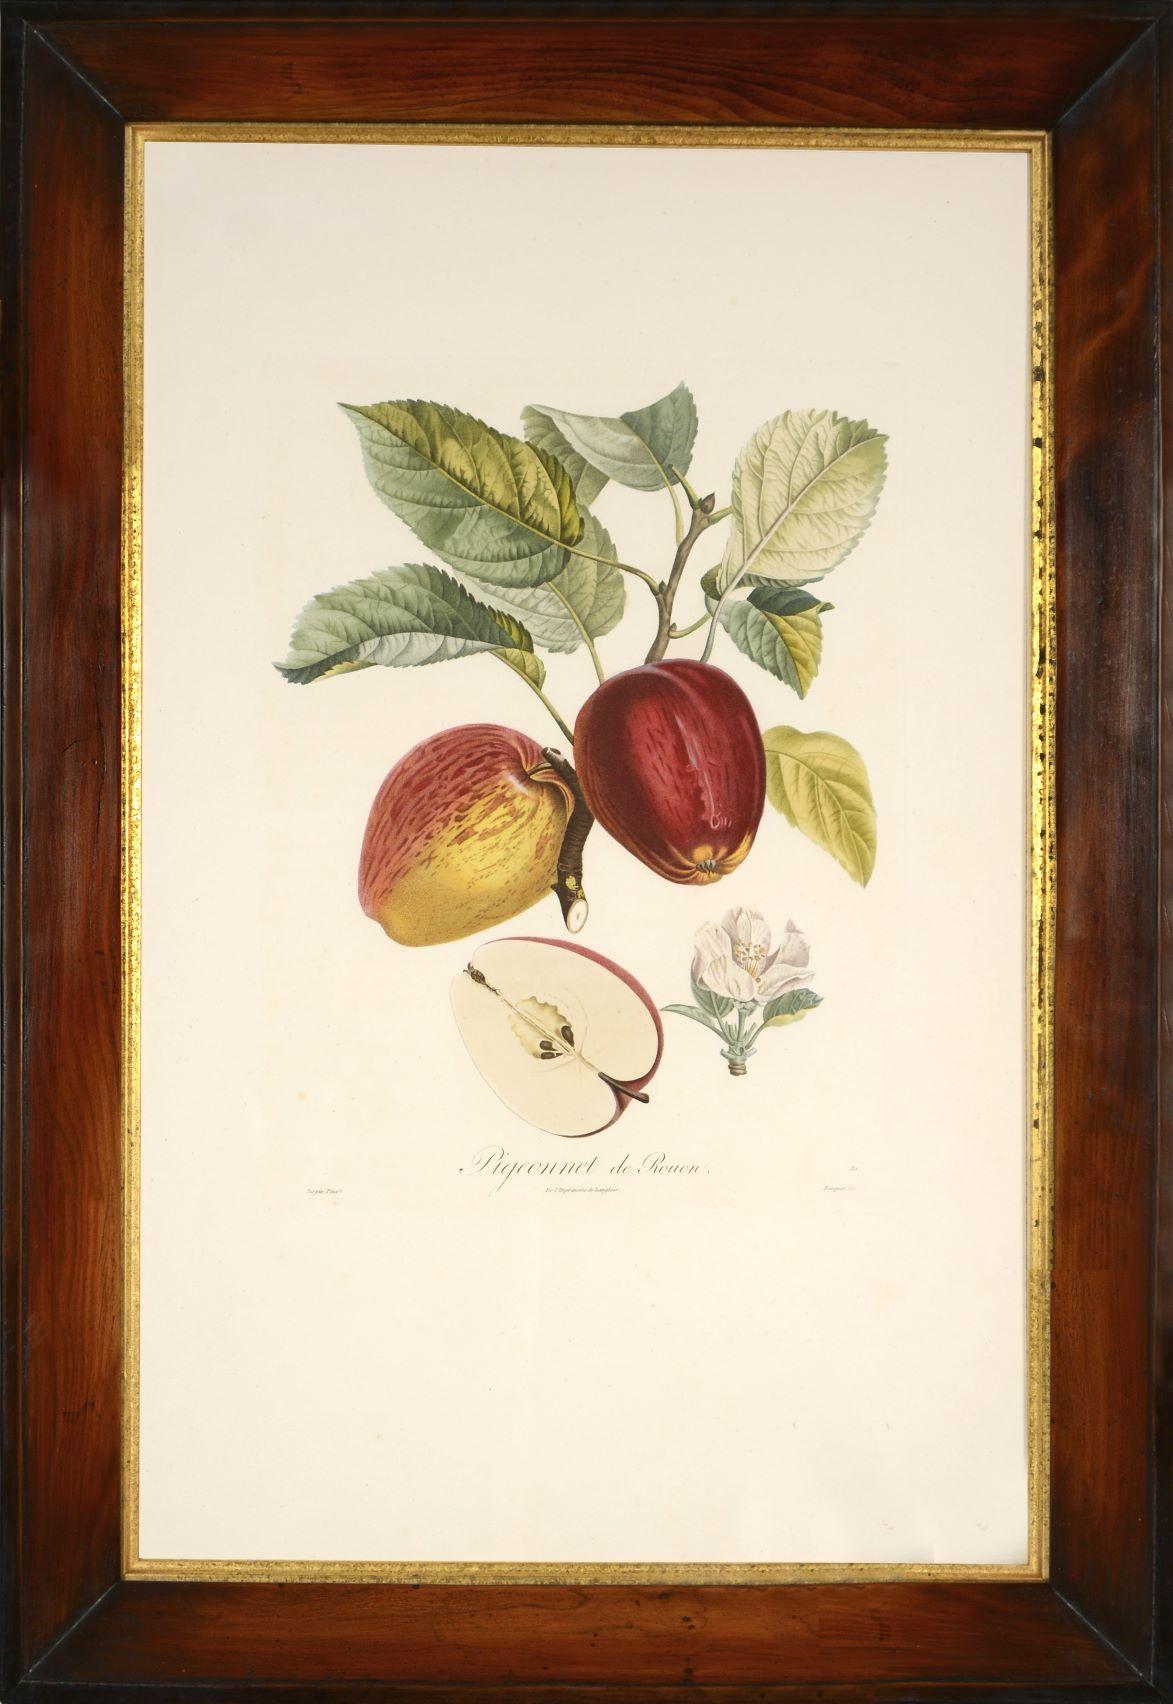 POITEAU/TURPIN. Plateau des arbres fruitiers : Un ensemble de quatre pommes - Print de POITEAU, A. and P. TURPIN.   